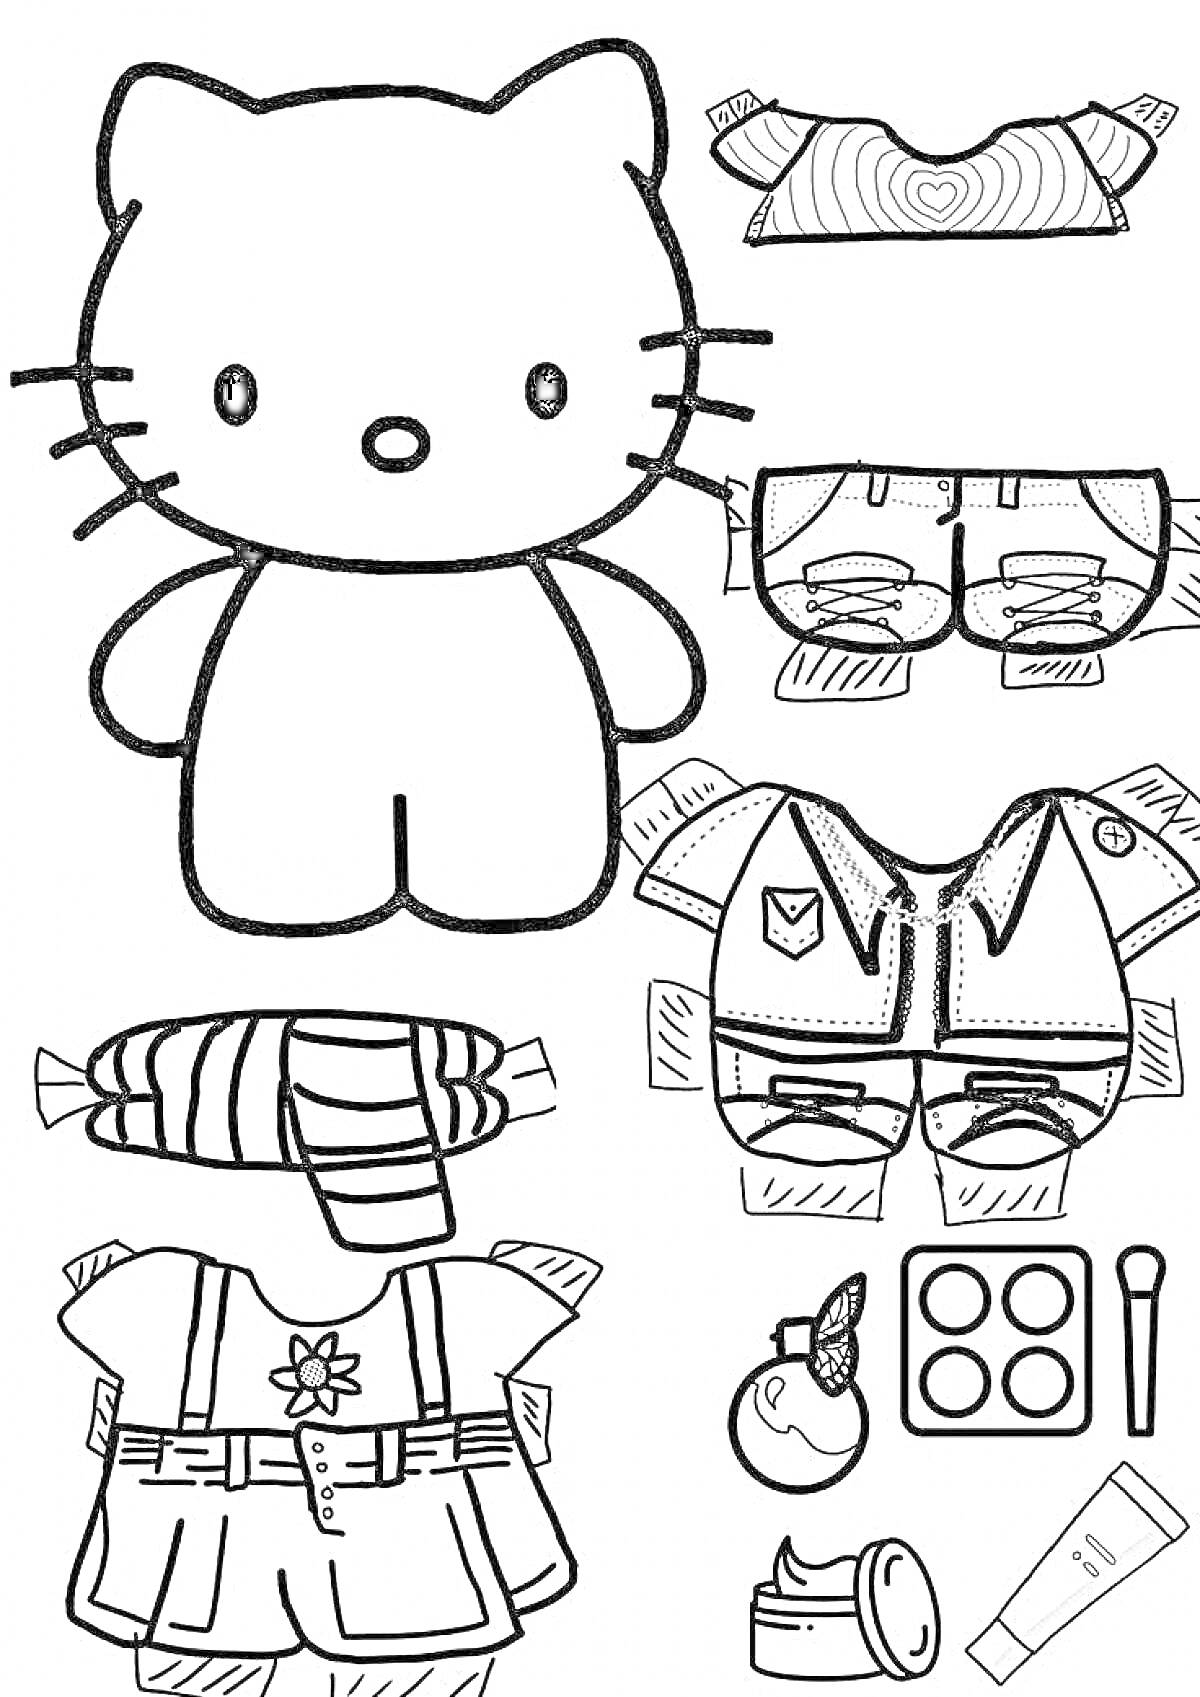 Hello Kitty с одеждой и аксессуарами - футболка с сердцем, шорты с карманами, куртка с эмблемой, платье с цветком, шарф в полоску, духи, палетка теней для век, крем для лица, тюбик с кремом